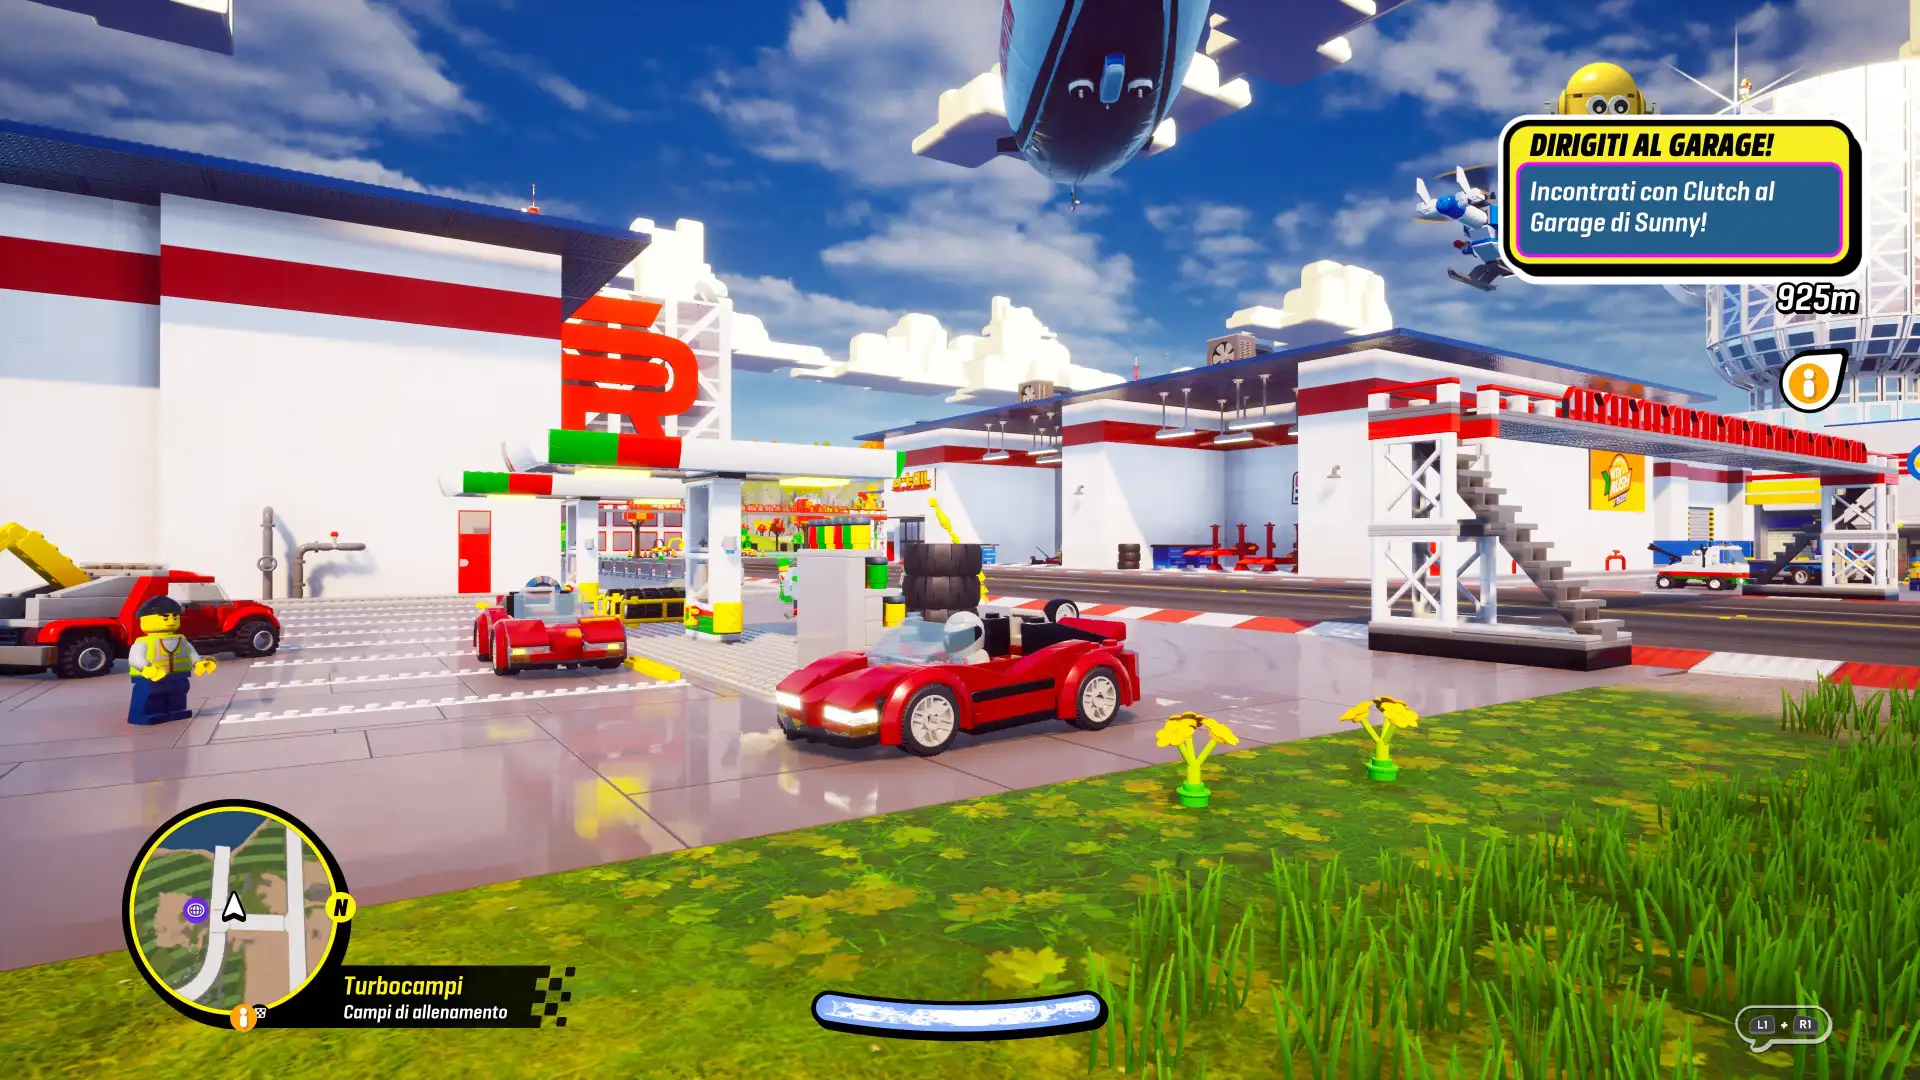 LEGO 2K Drive recensione - torniamo sul racing game open world a mattoncini dopo un bel rodaggio